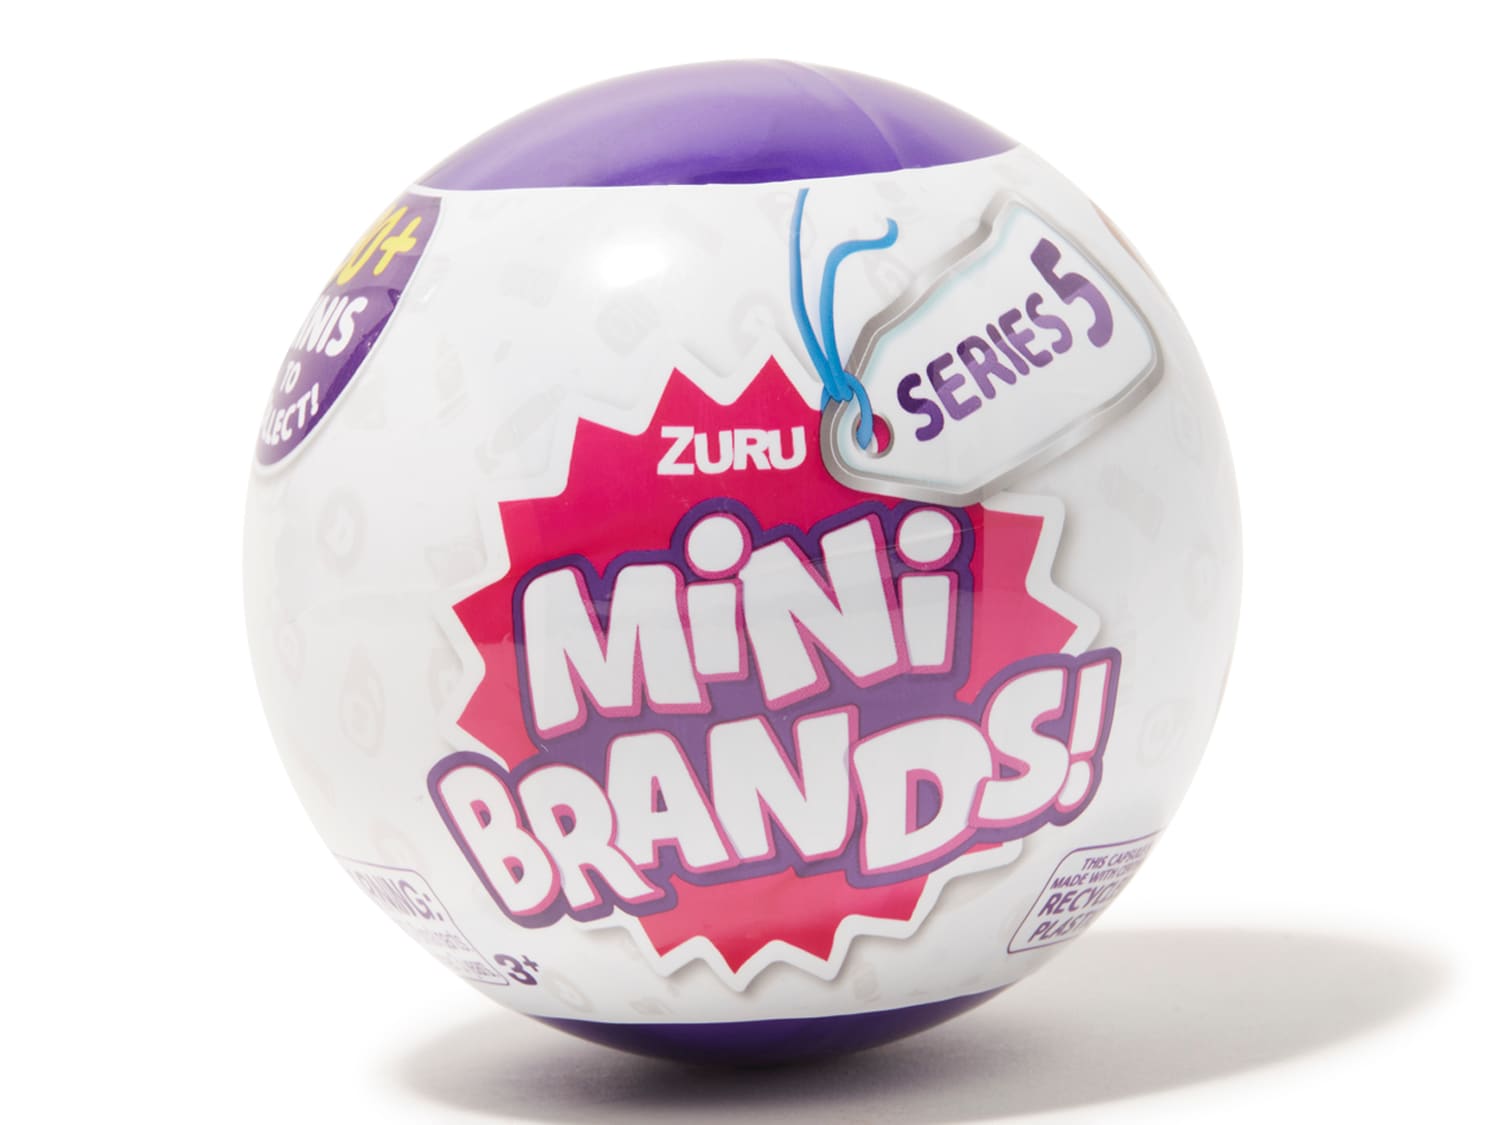 NEW Zuru Mini Brands SNEAKERS ~ You Pick 